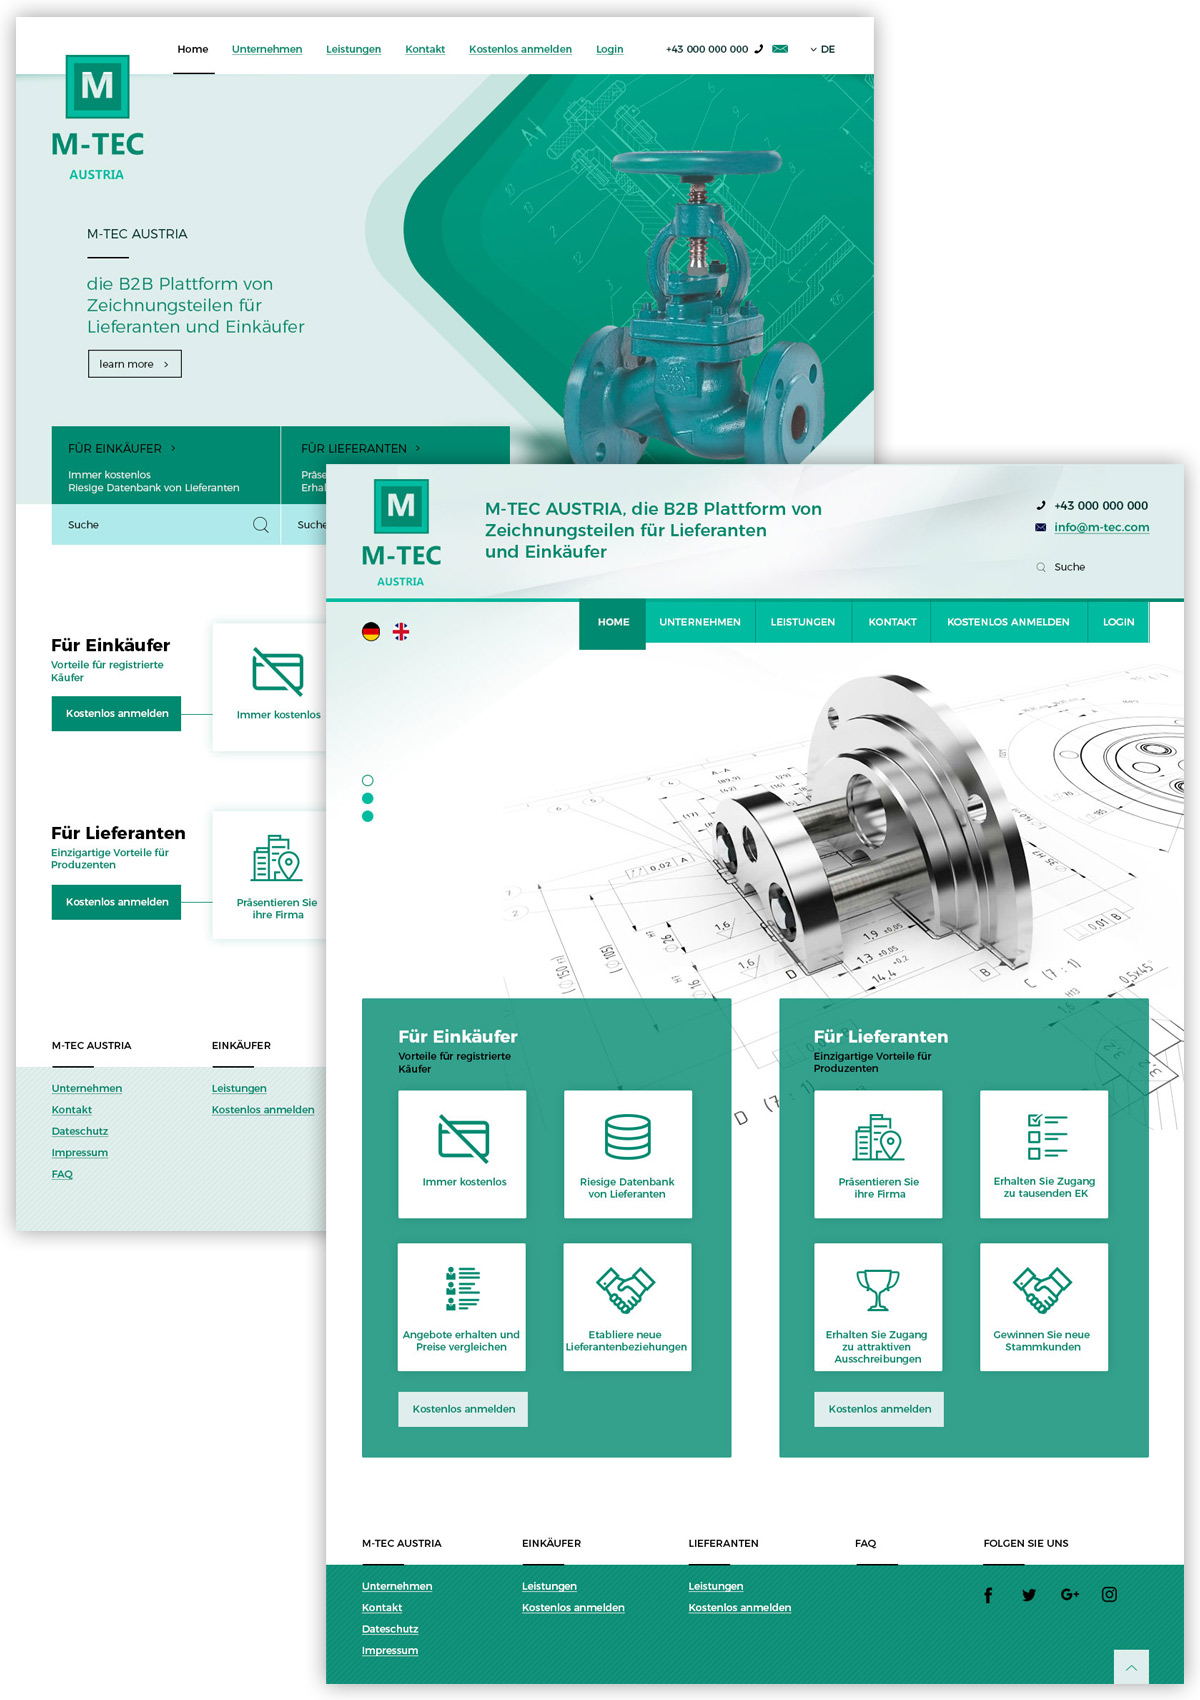 Дизайн сайта для M-TEC Austria - изображение 1